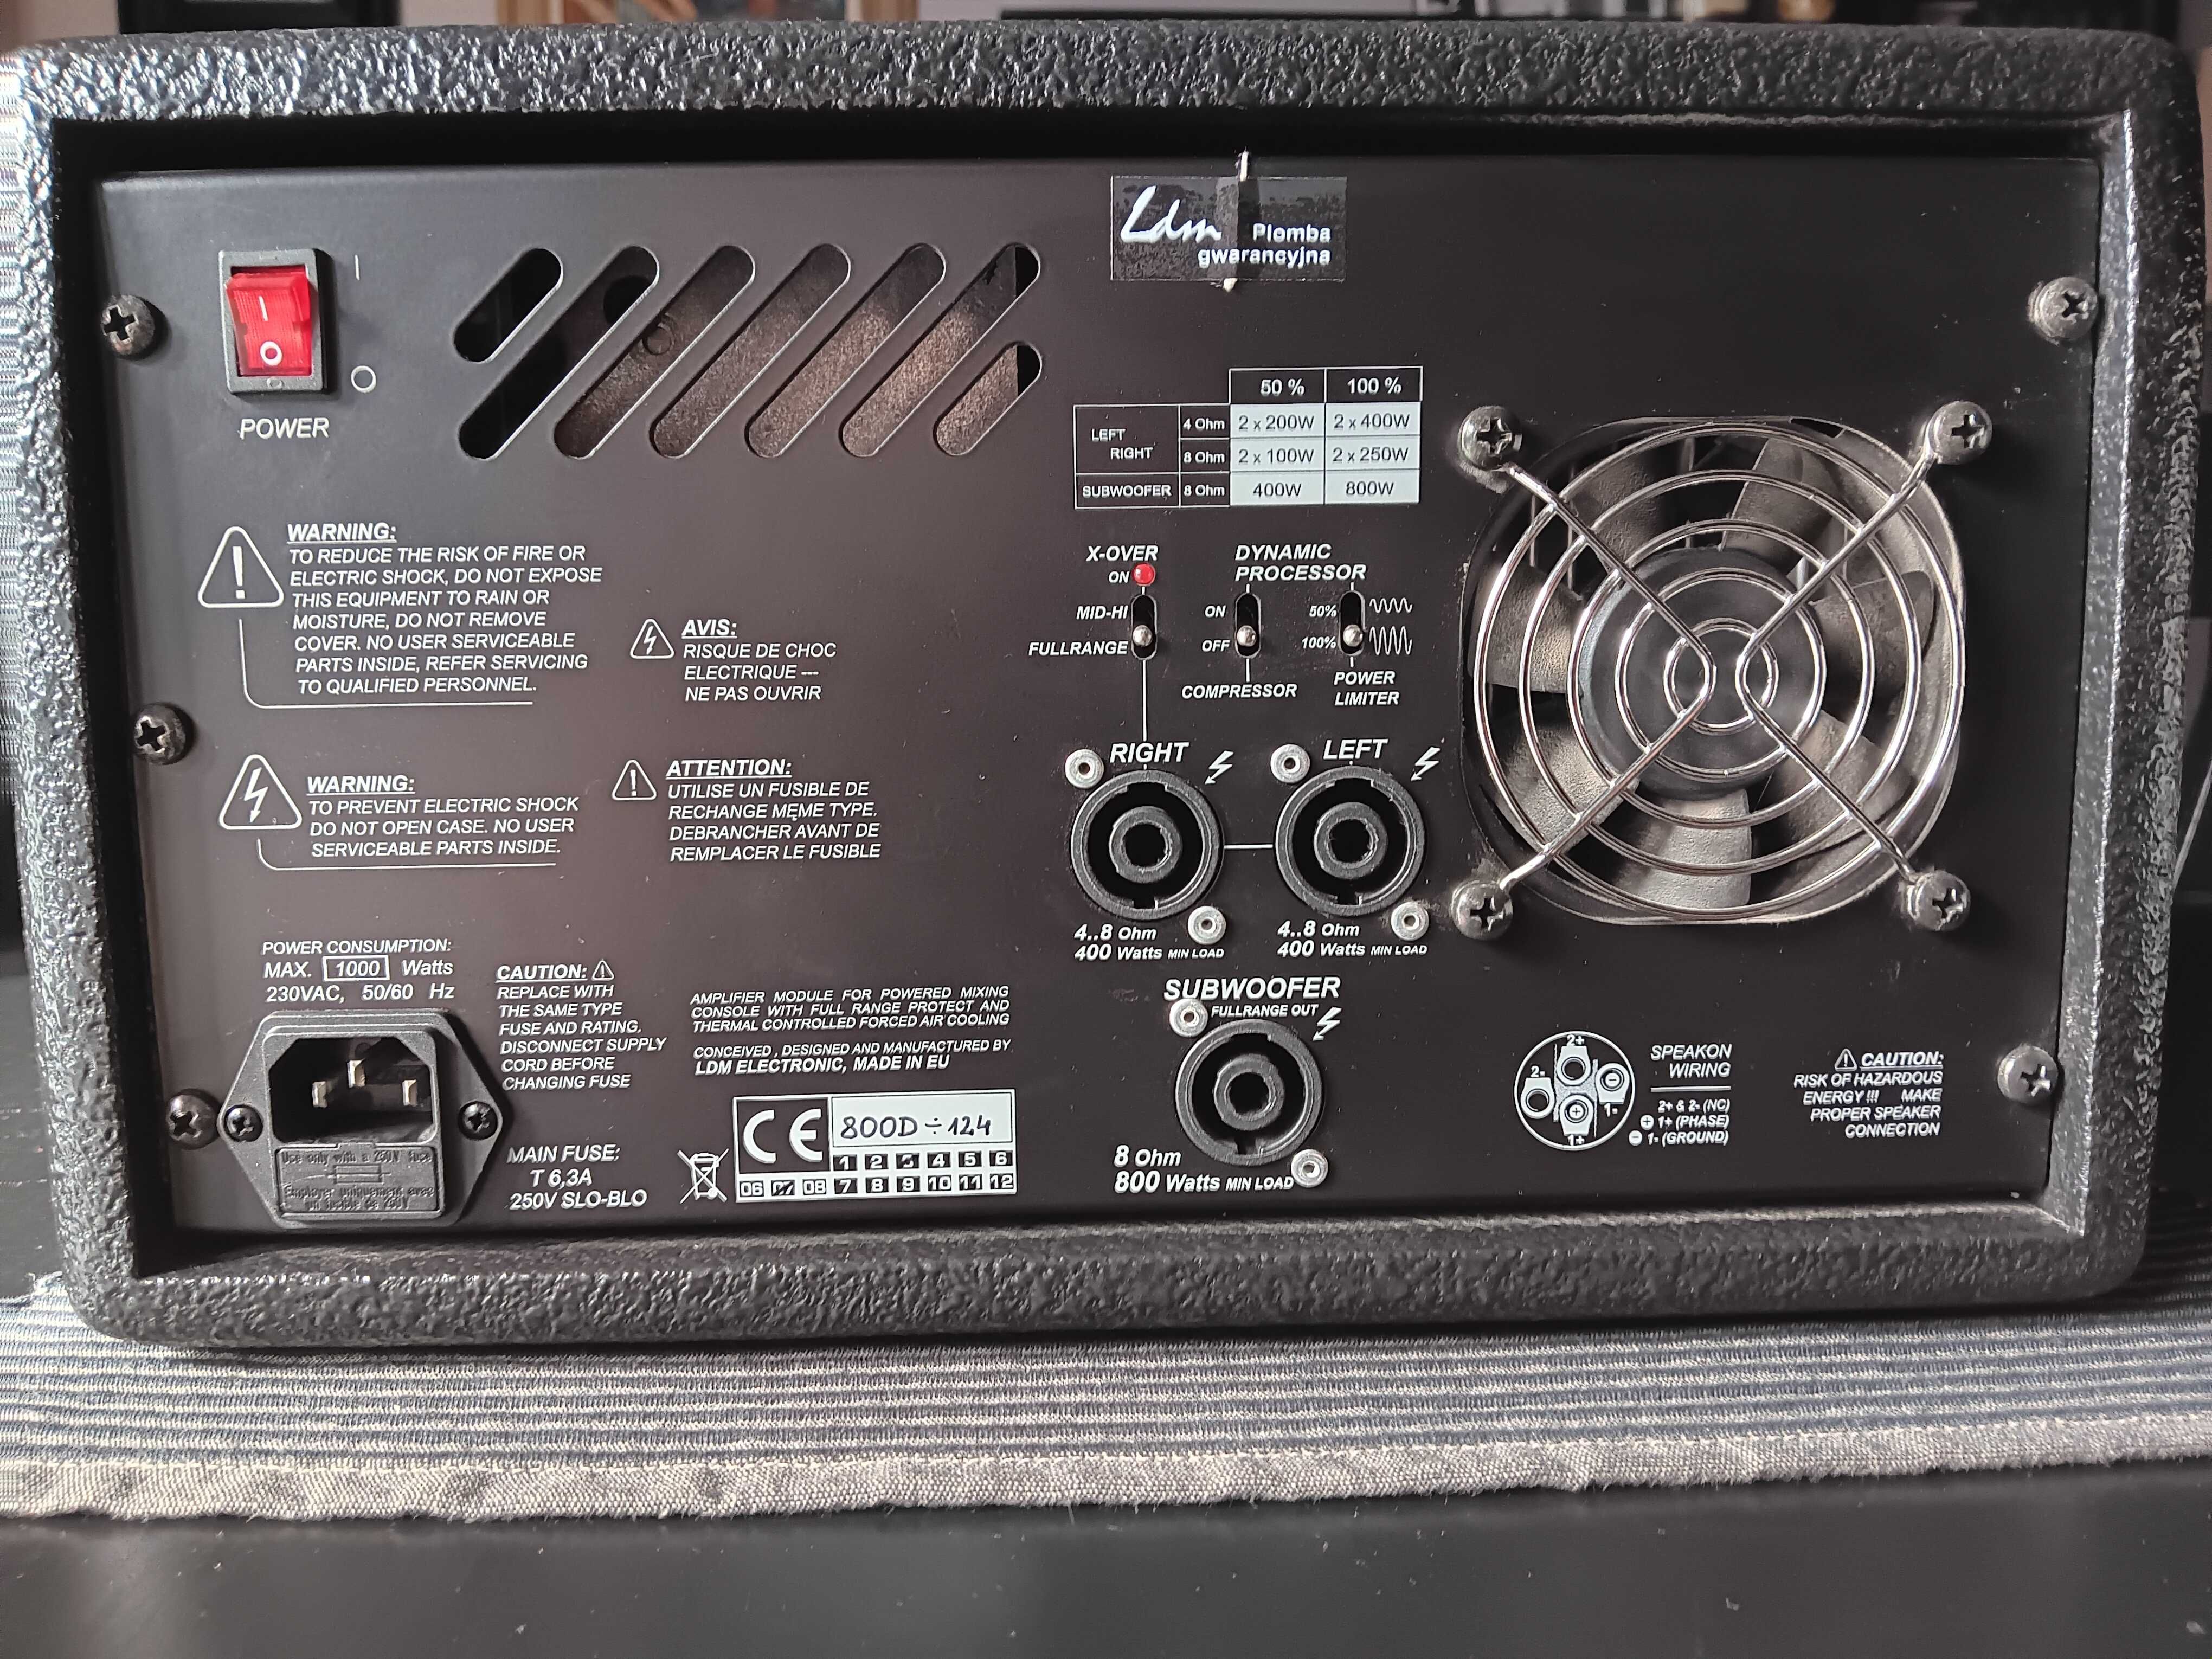 Znakomity stereofoniczny powermikser LDM SMX-800D z kolumnami